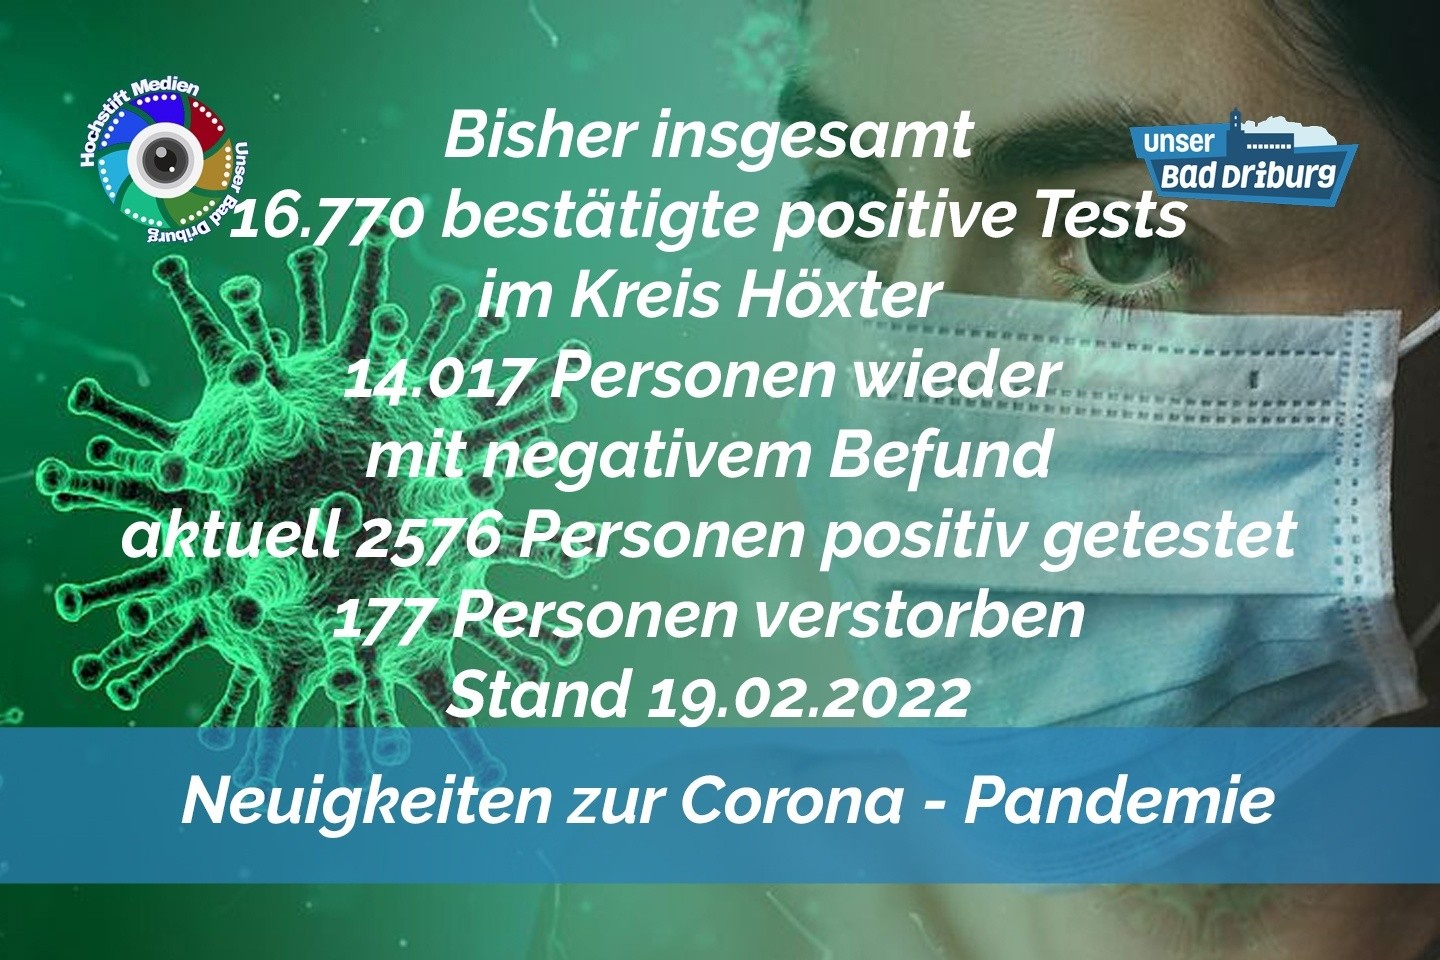 Update 19. Februar 2022: 335 weitere amtlich positive Tests im Kreis Höxter